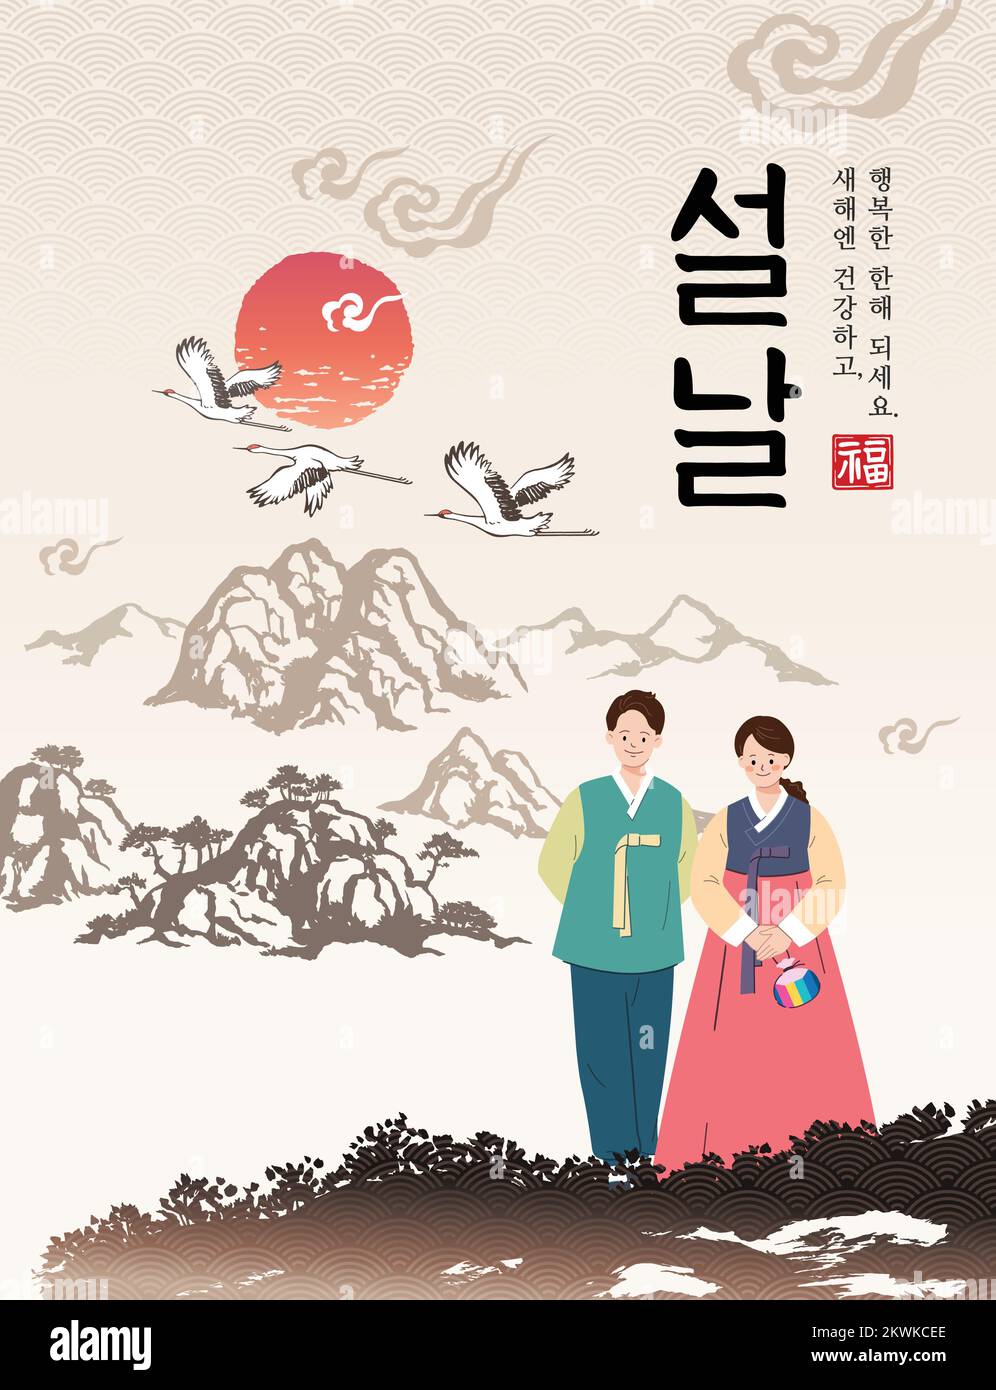 Koreanisches Neujahr. Sonnenaufgang und natürliche Landschaft im traditionellen Malstil, ein Paar trägt hanbok. Stock Vektor